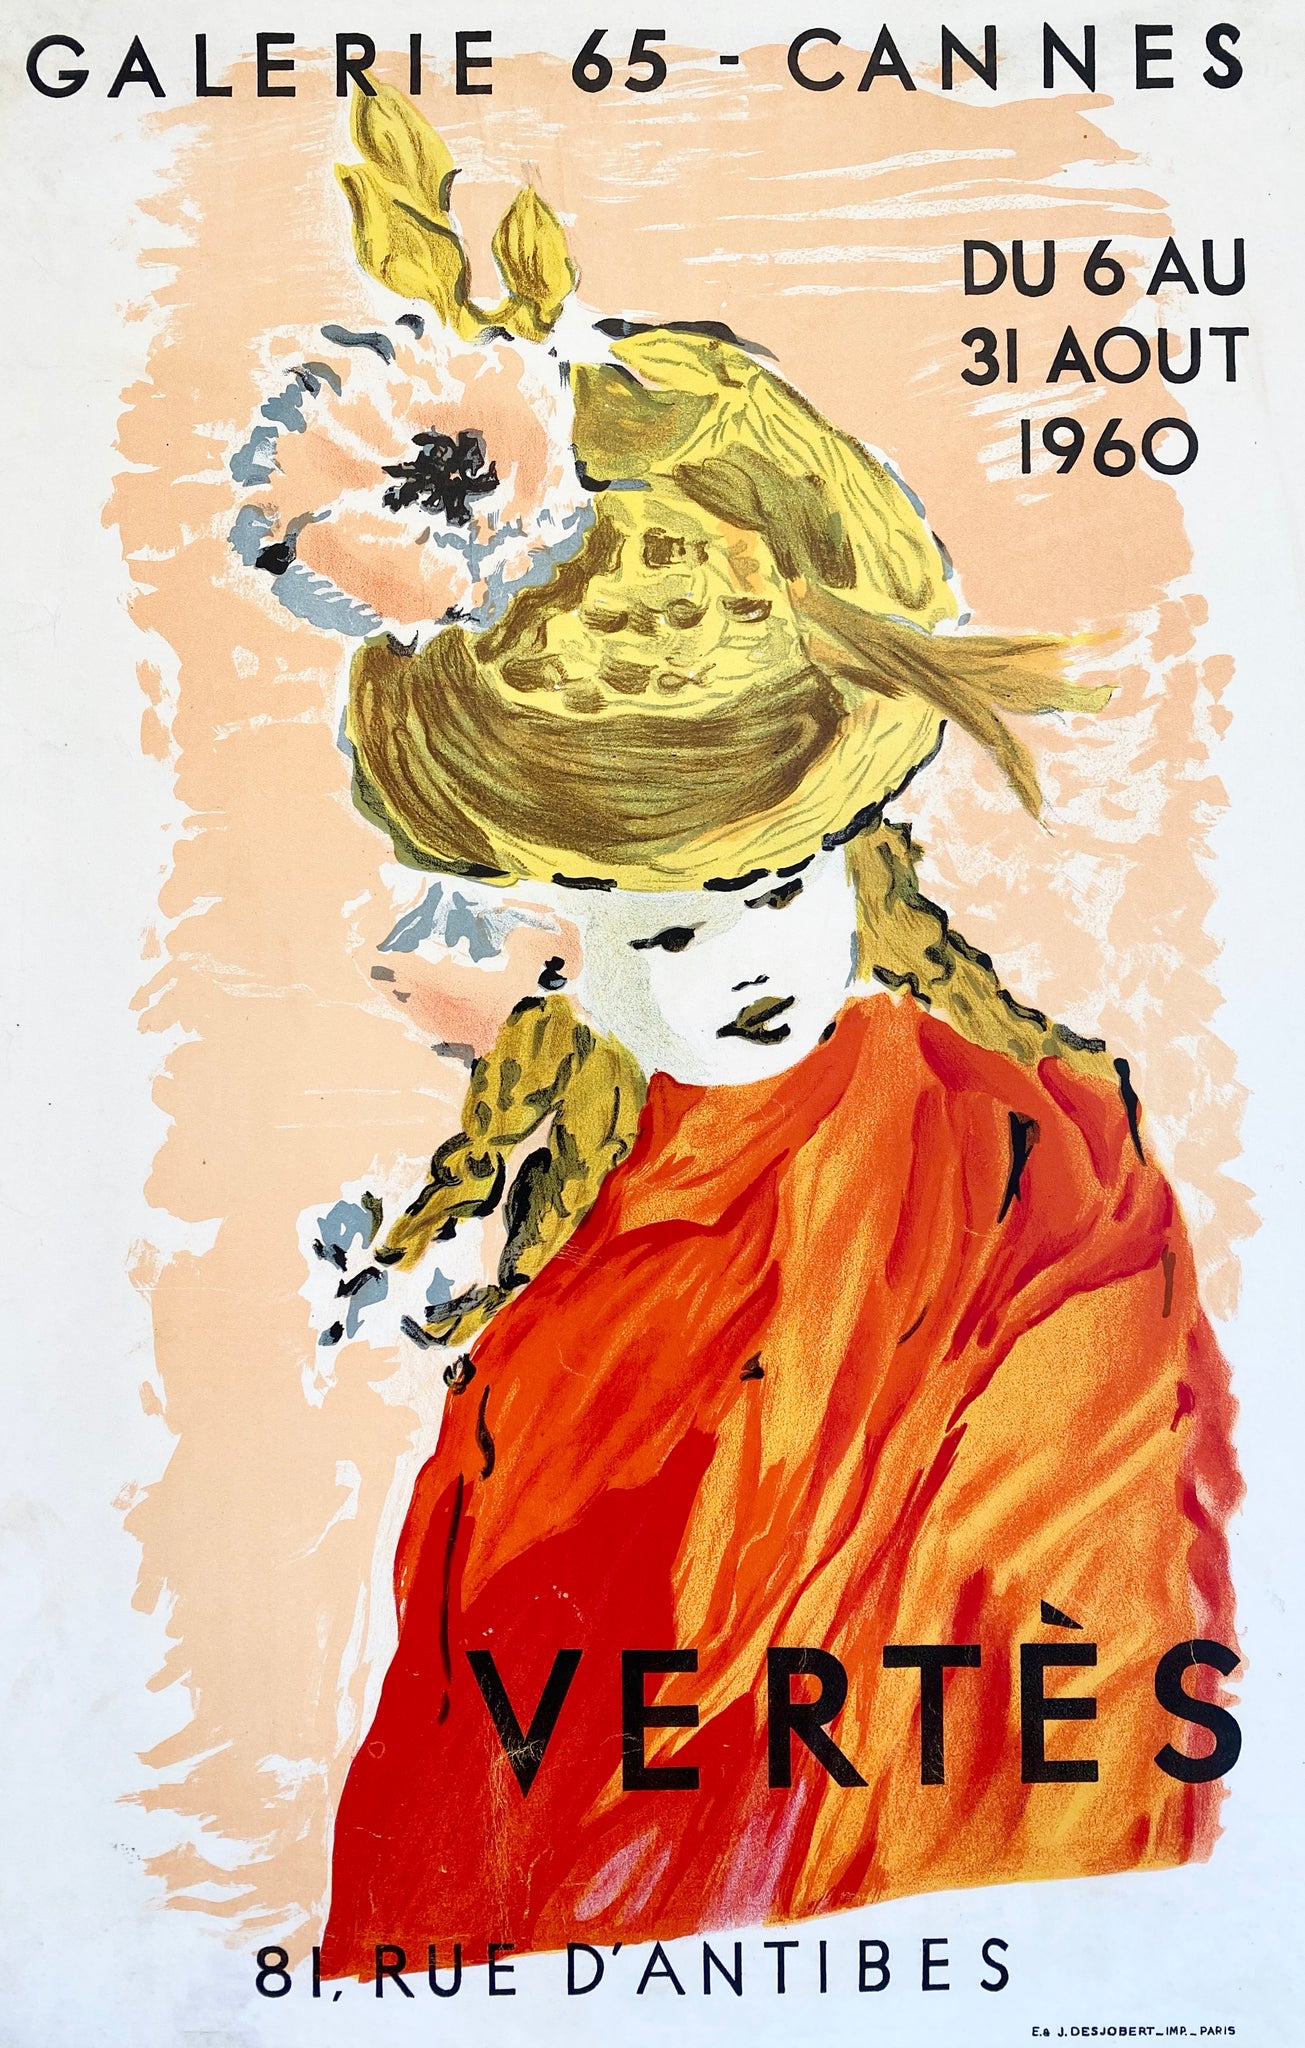 Affiche originale lithographique réalisé à l'occasion de l'exposition de Marcel Vertés   à la Galerie 65 - Cannes 81 rue d'antibes,  se déroulant du du 6 au 31 aout 1960 à Cannes.